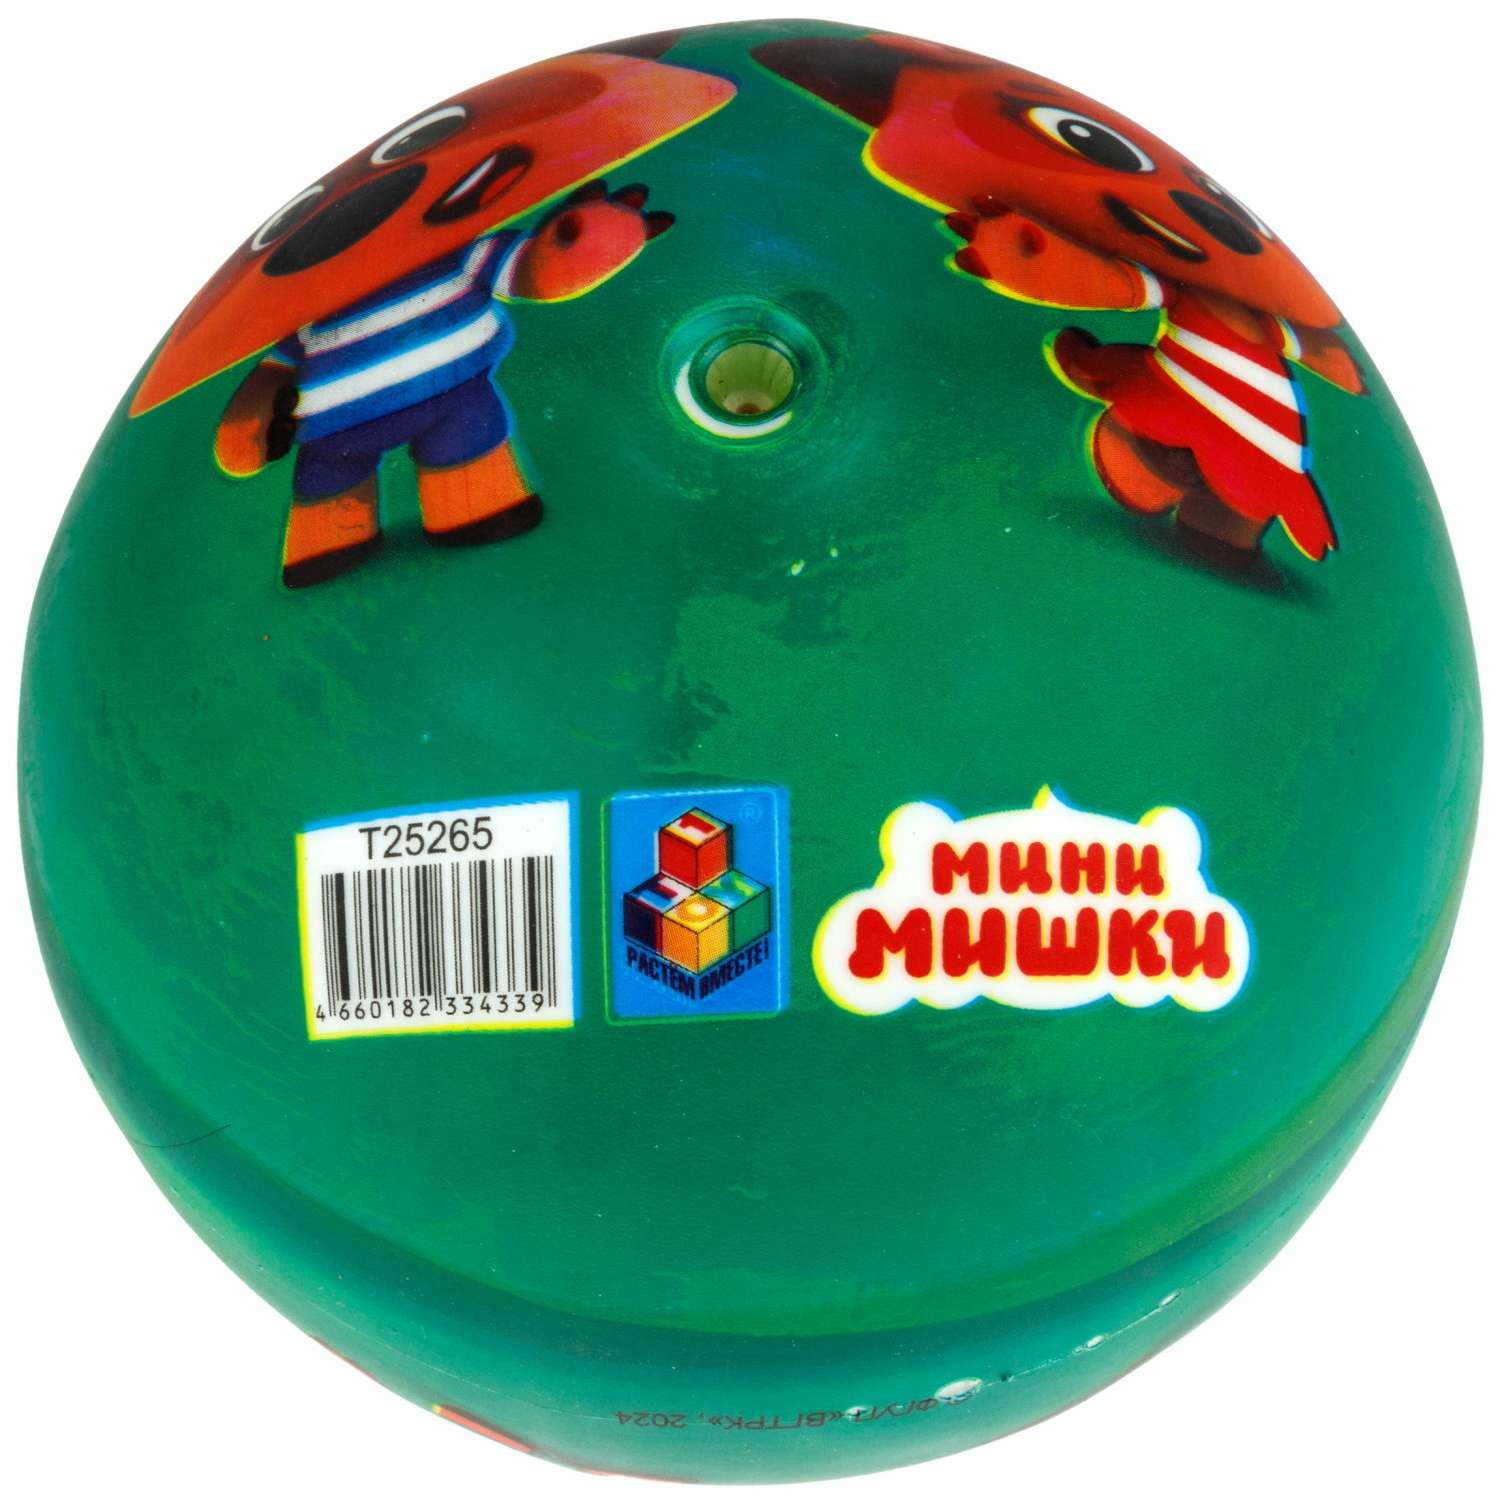 Мяч детский 15 см 1TOY Ми-Ми-Мишки Мини-мишки резиновый надувной для ребенка игрушки для улицы зеленый - фото 3